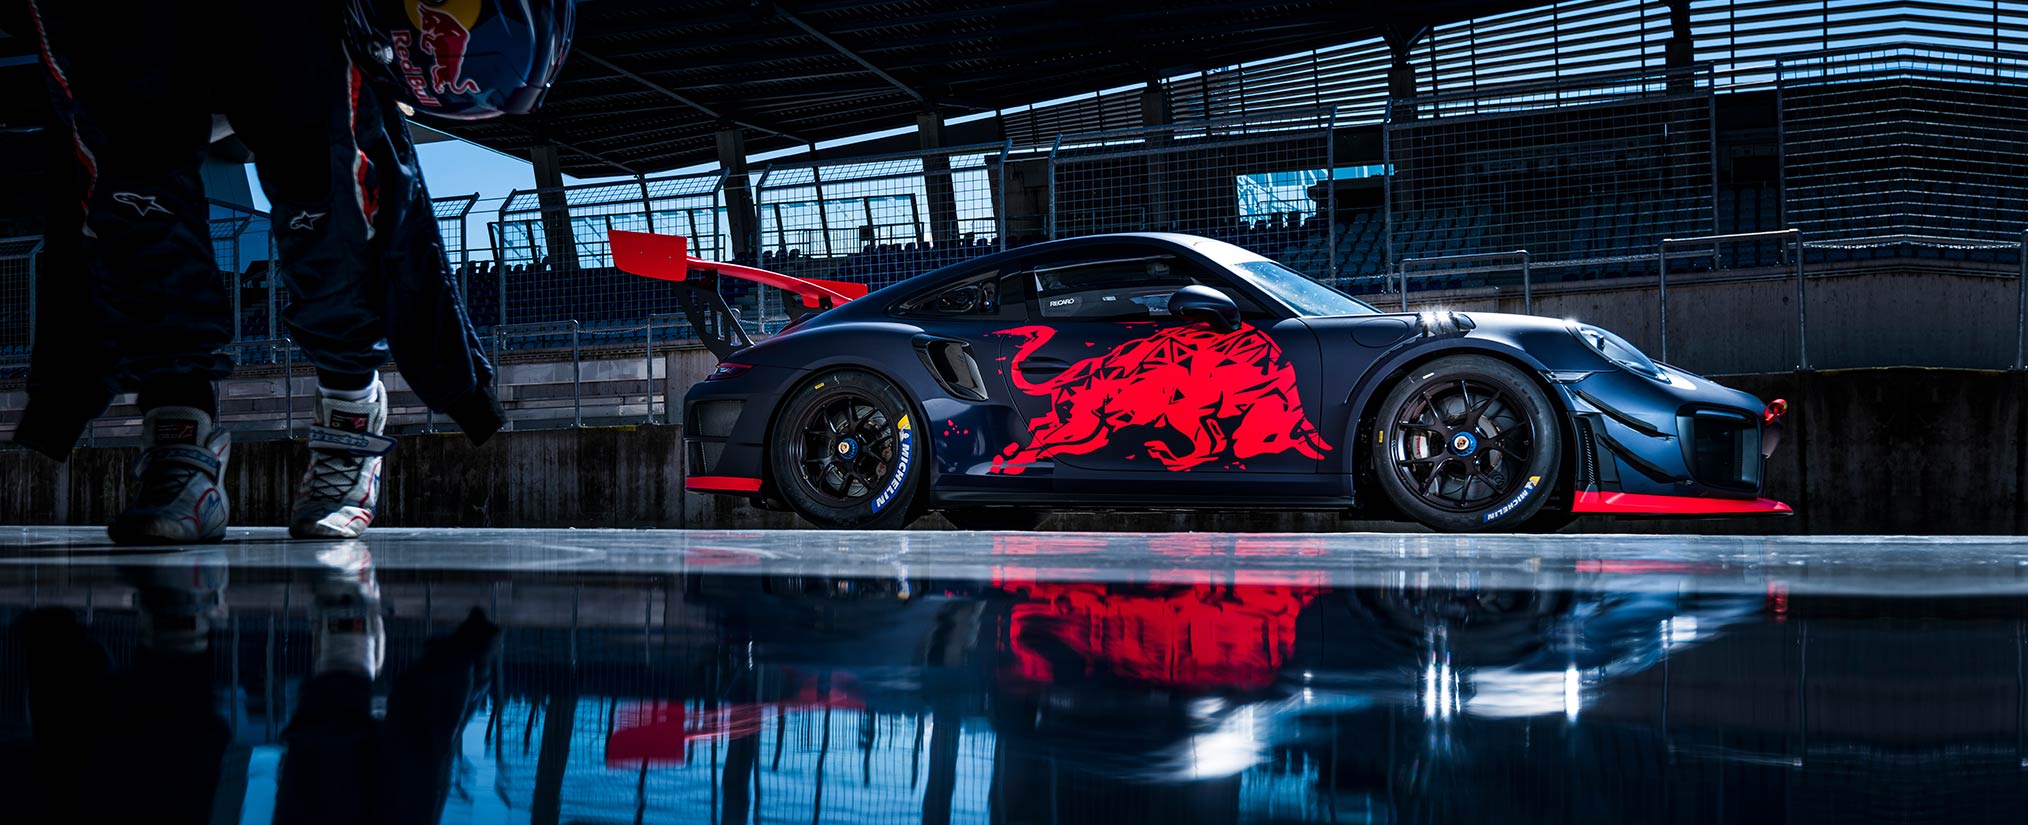 Branding of the Projekt Spielberg Porsche